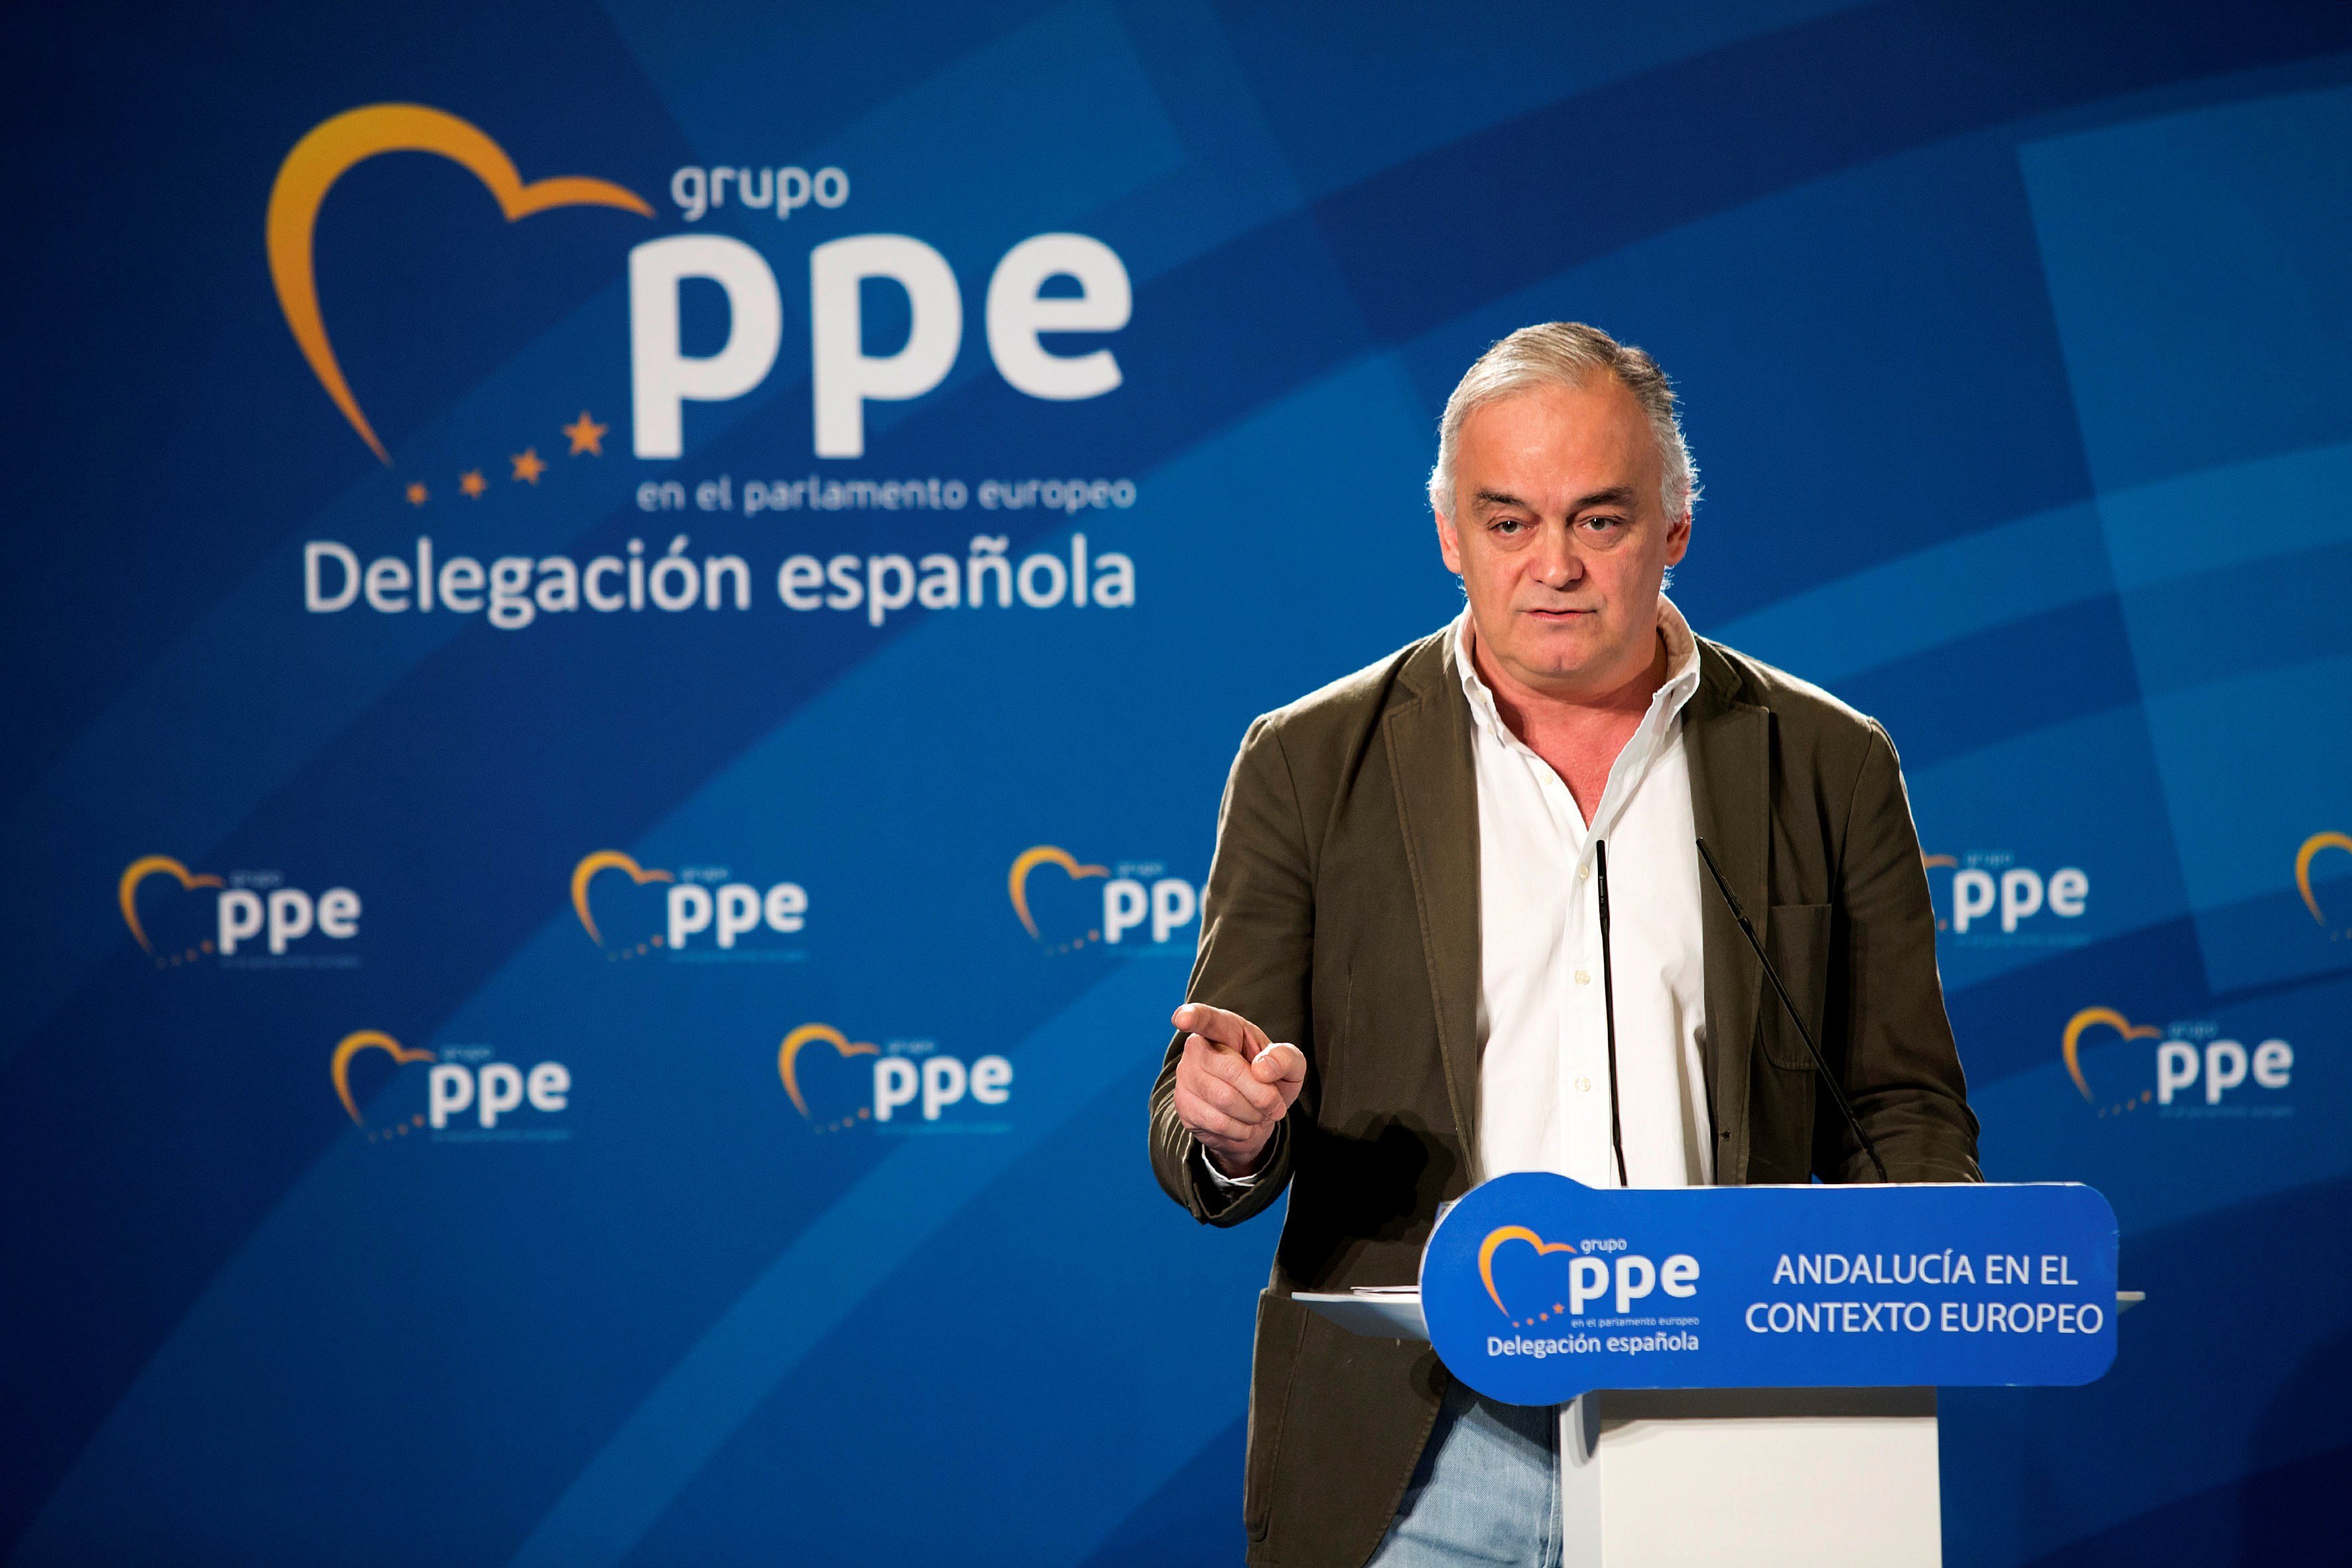 El PP enviará una propuesta antes del 13 de julio a Sánchez para "renovar" el CGPJ